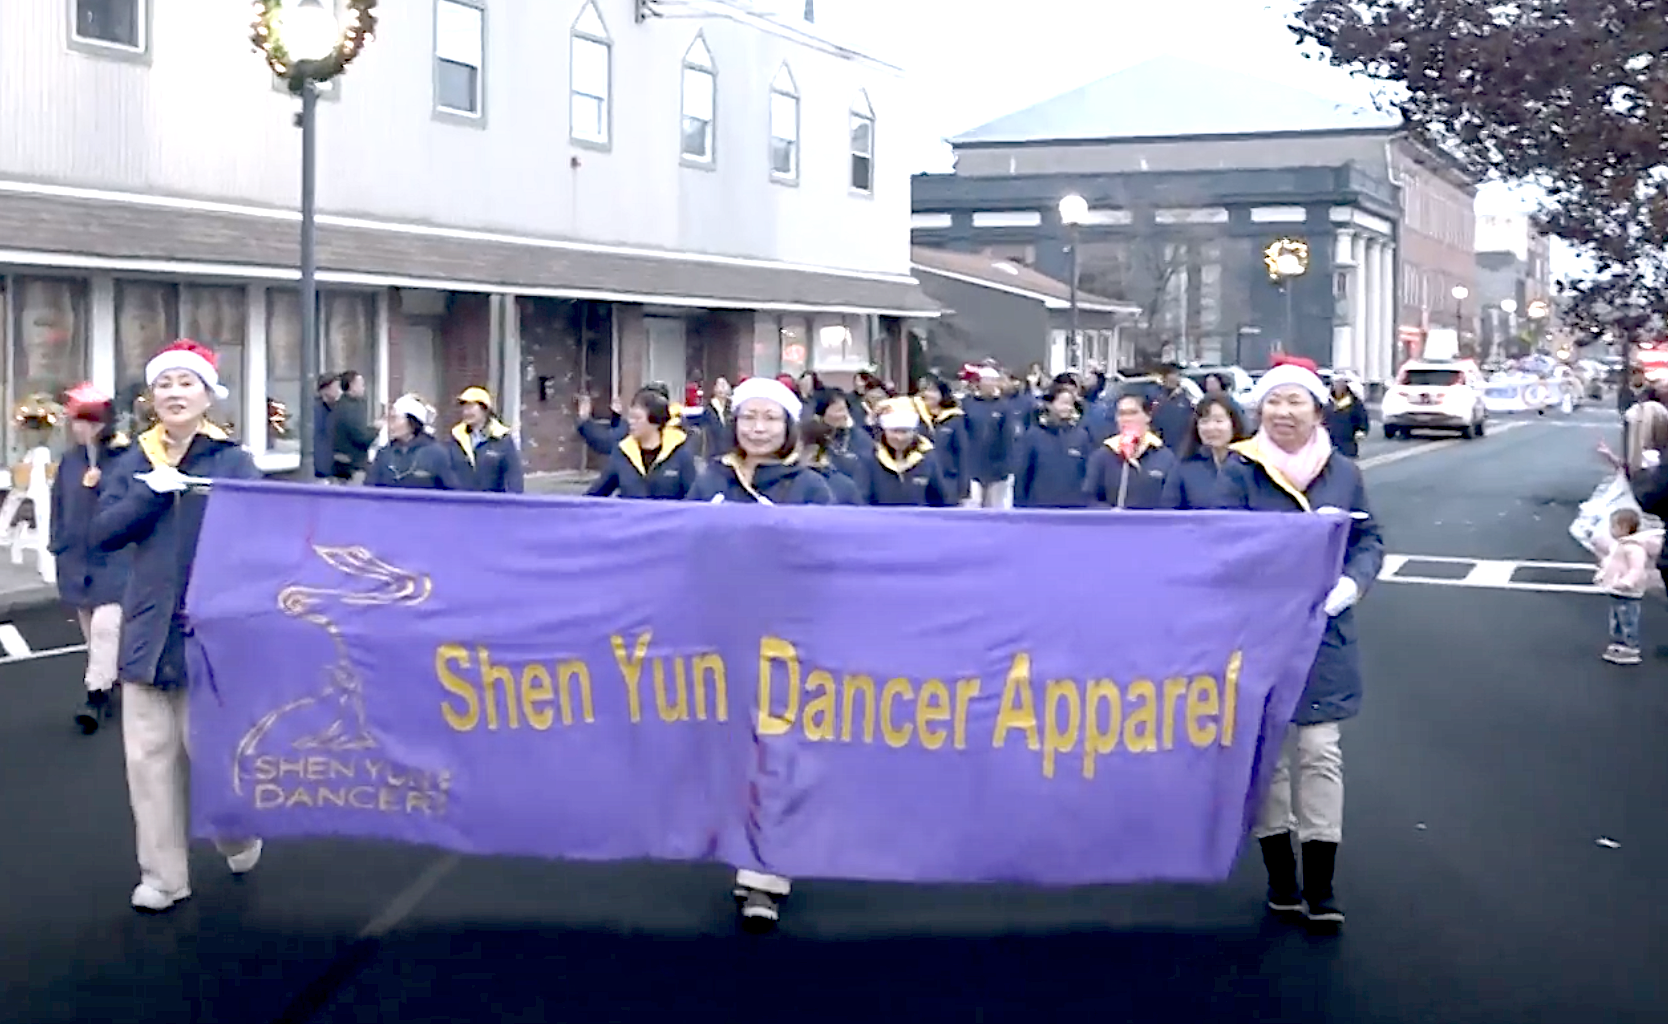 Hôm 02/12, công ty thời trang Shen Yun Dancer lần đầu tiên xuất hiện tại Lễ diễn hành Giáng Sinh ở Port Jervis. (Ảnh: NTD)